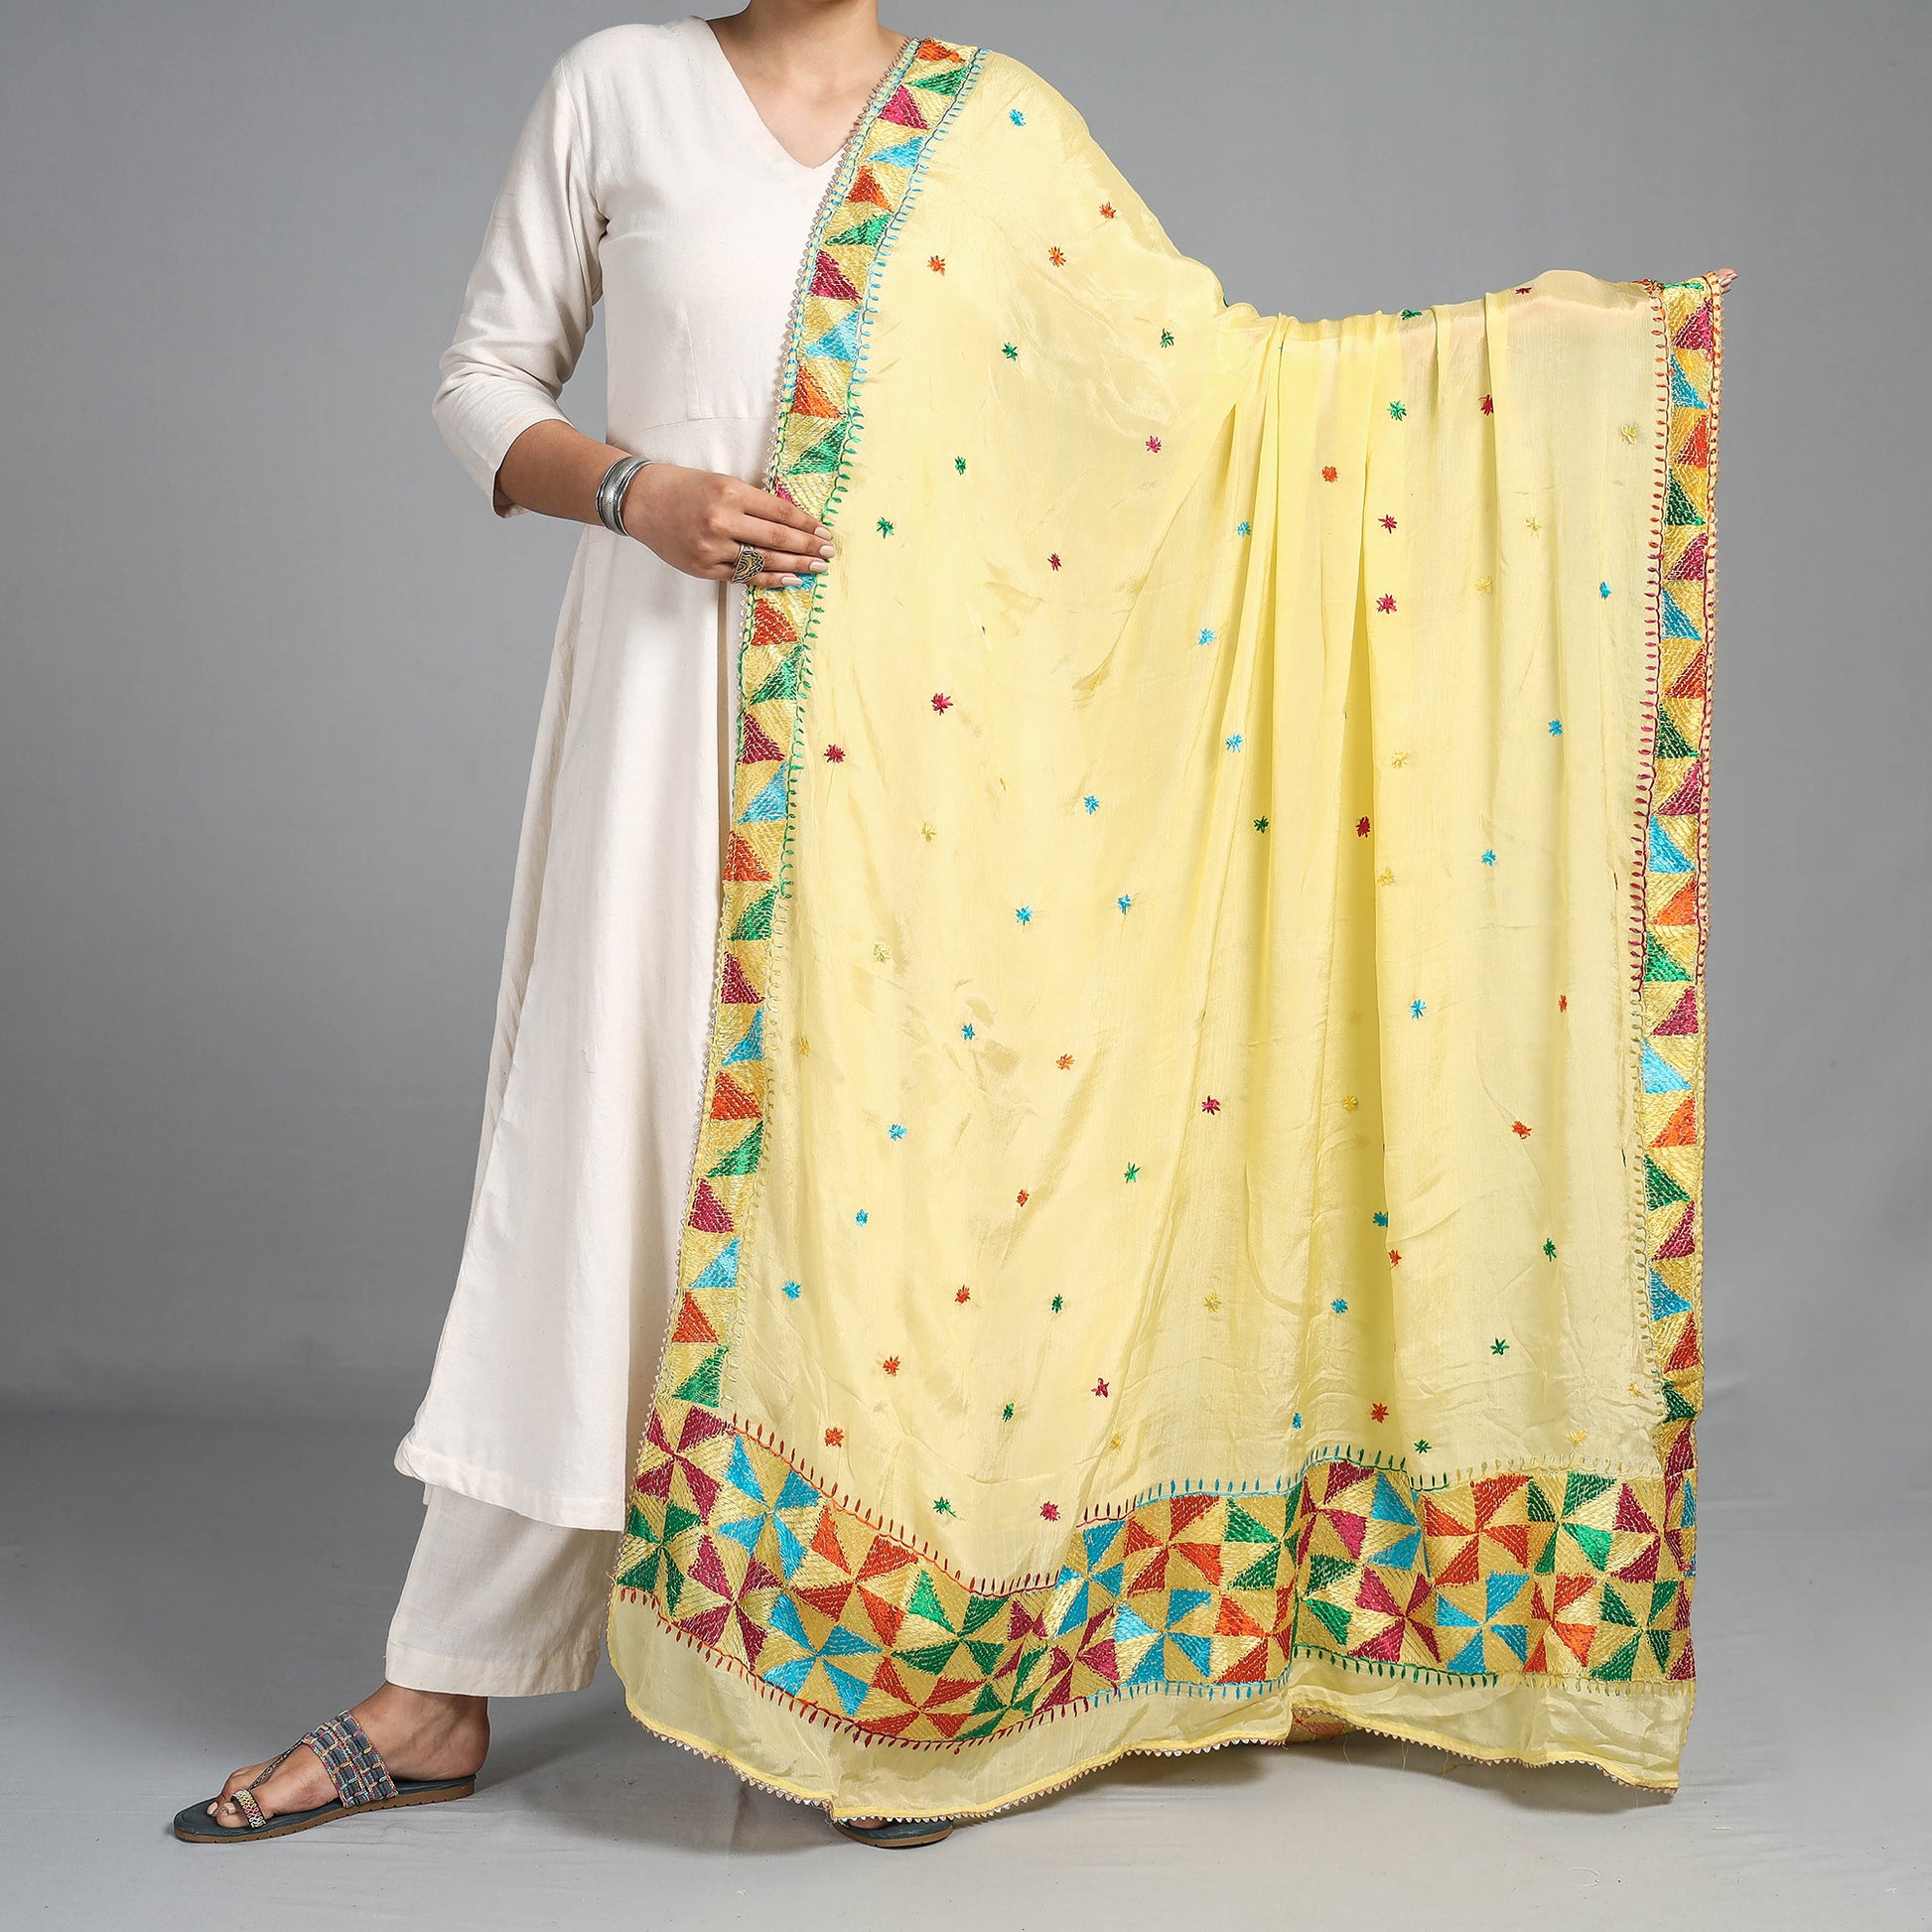 Medium Ladies Yellow Plain Cotton Kurti at Rs 180/piece in Jaipur